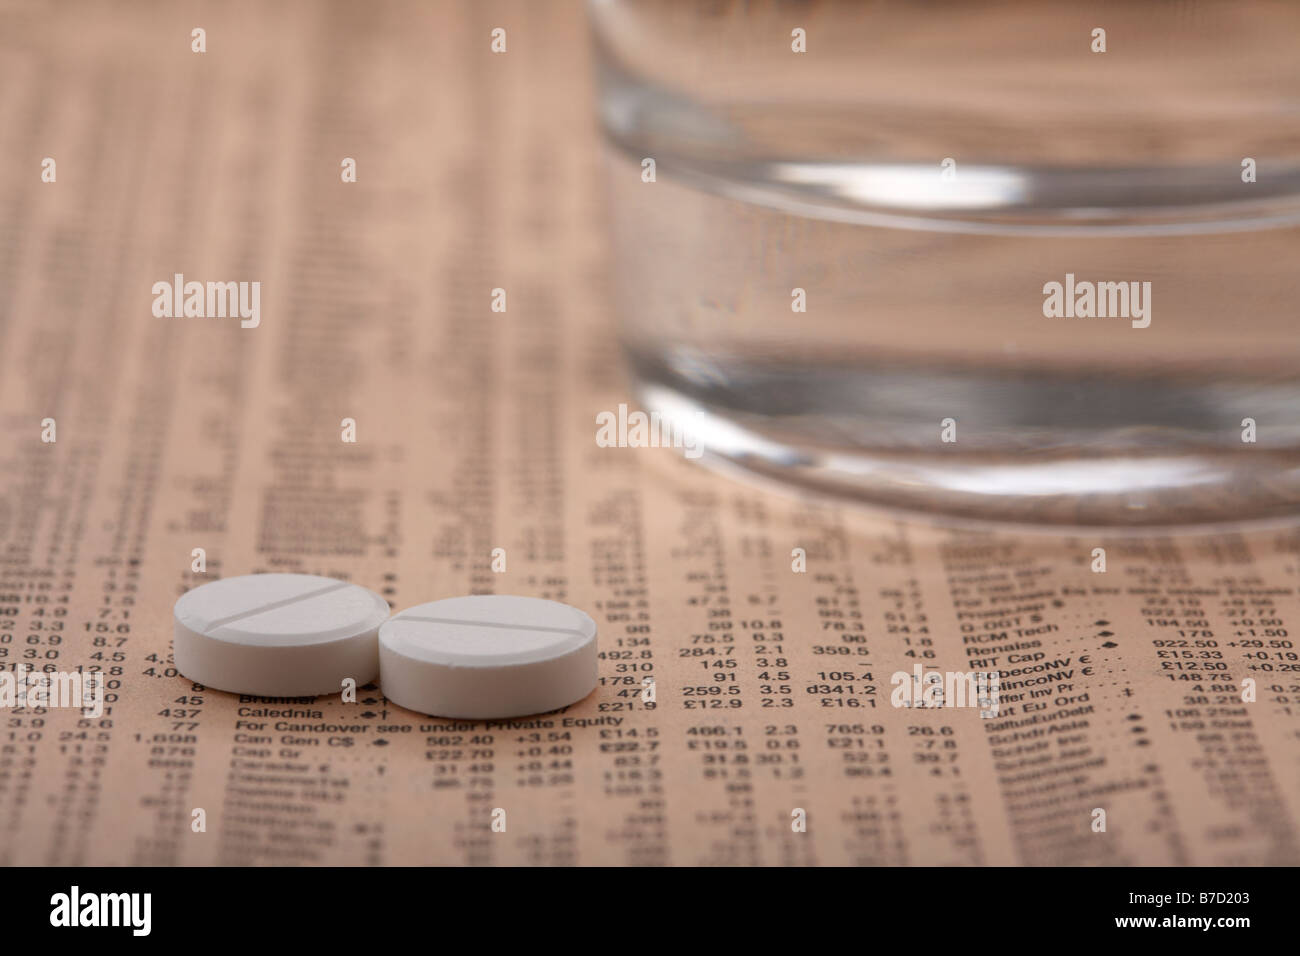 zwei Paracetamol Aspirin-Tabletten neben einem Glas Wasser auf eine Kopie der financial Times sitzen Stockfoto